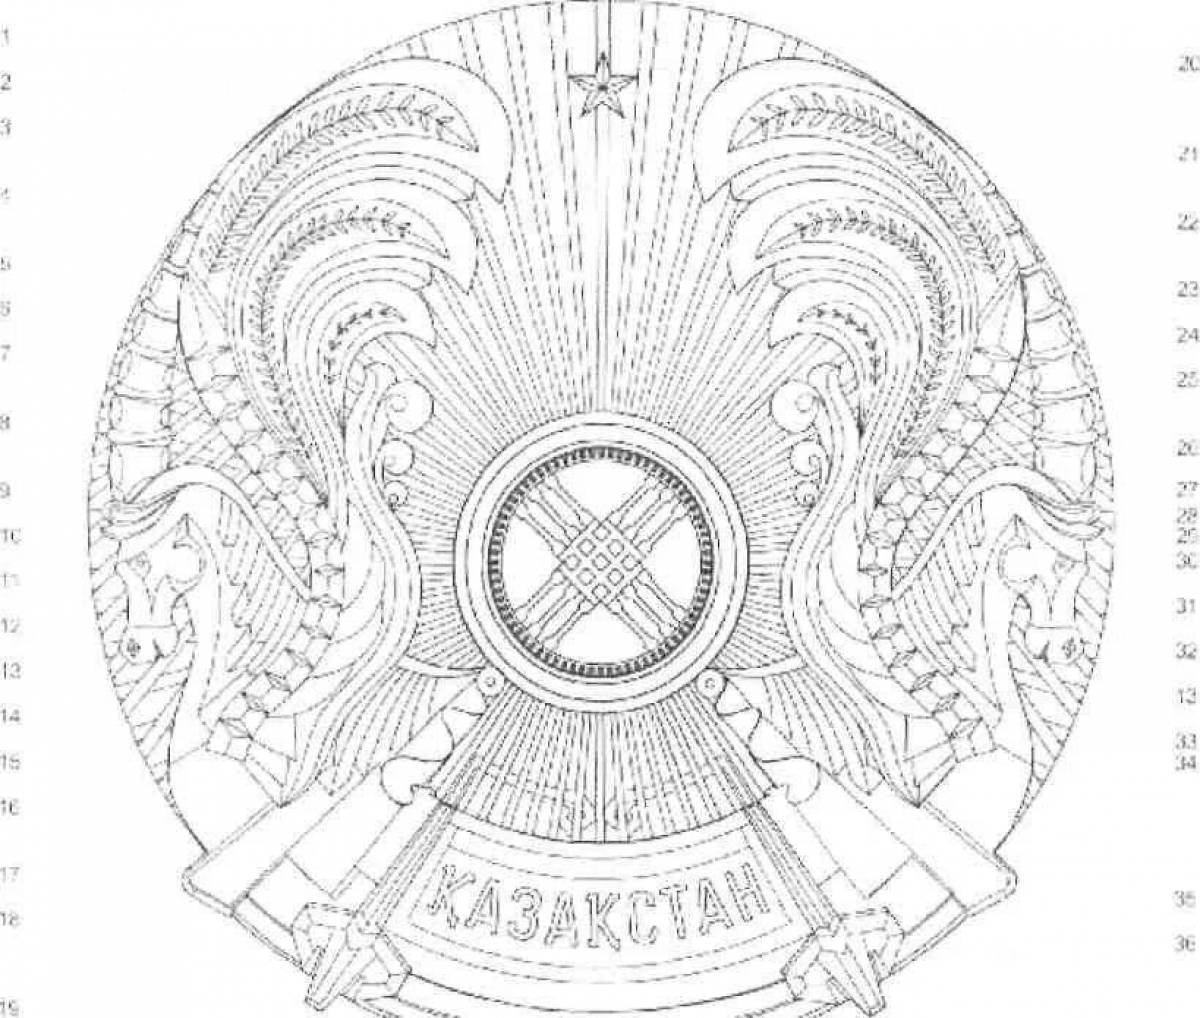 Emblem of kazakhstan #1